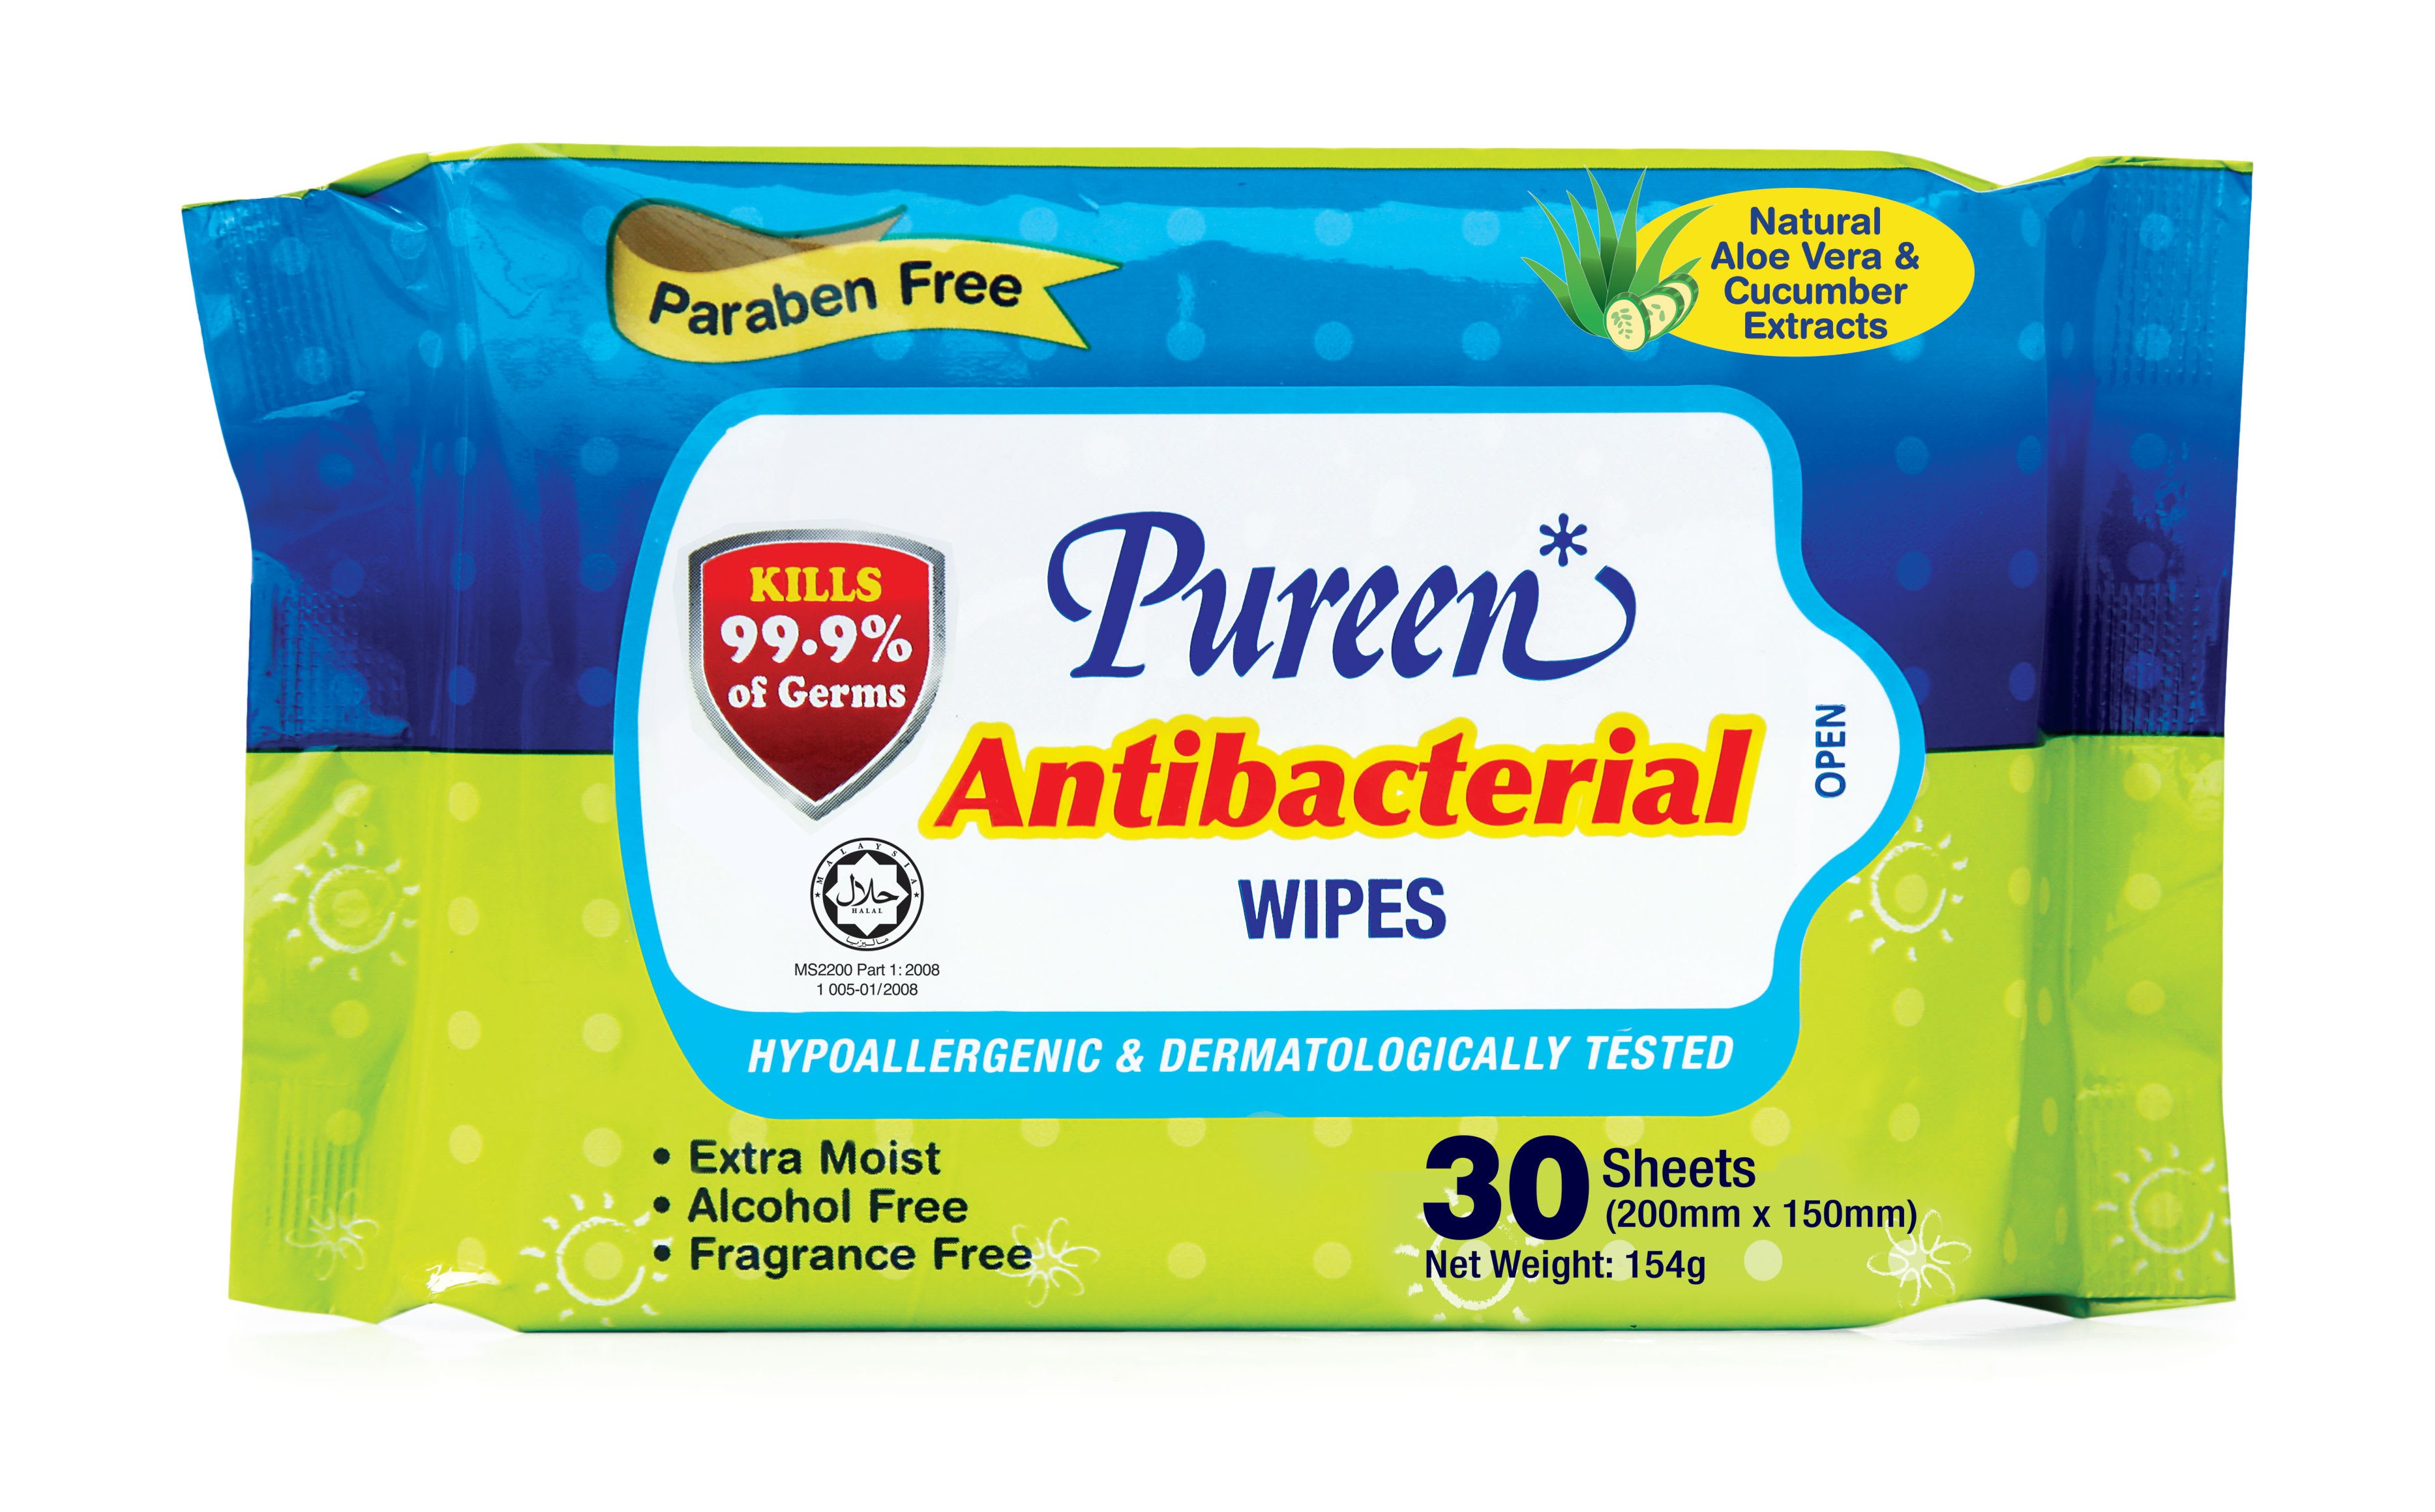 Antibacterial wipes